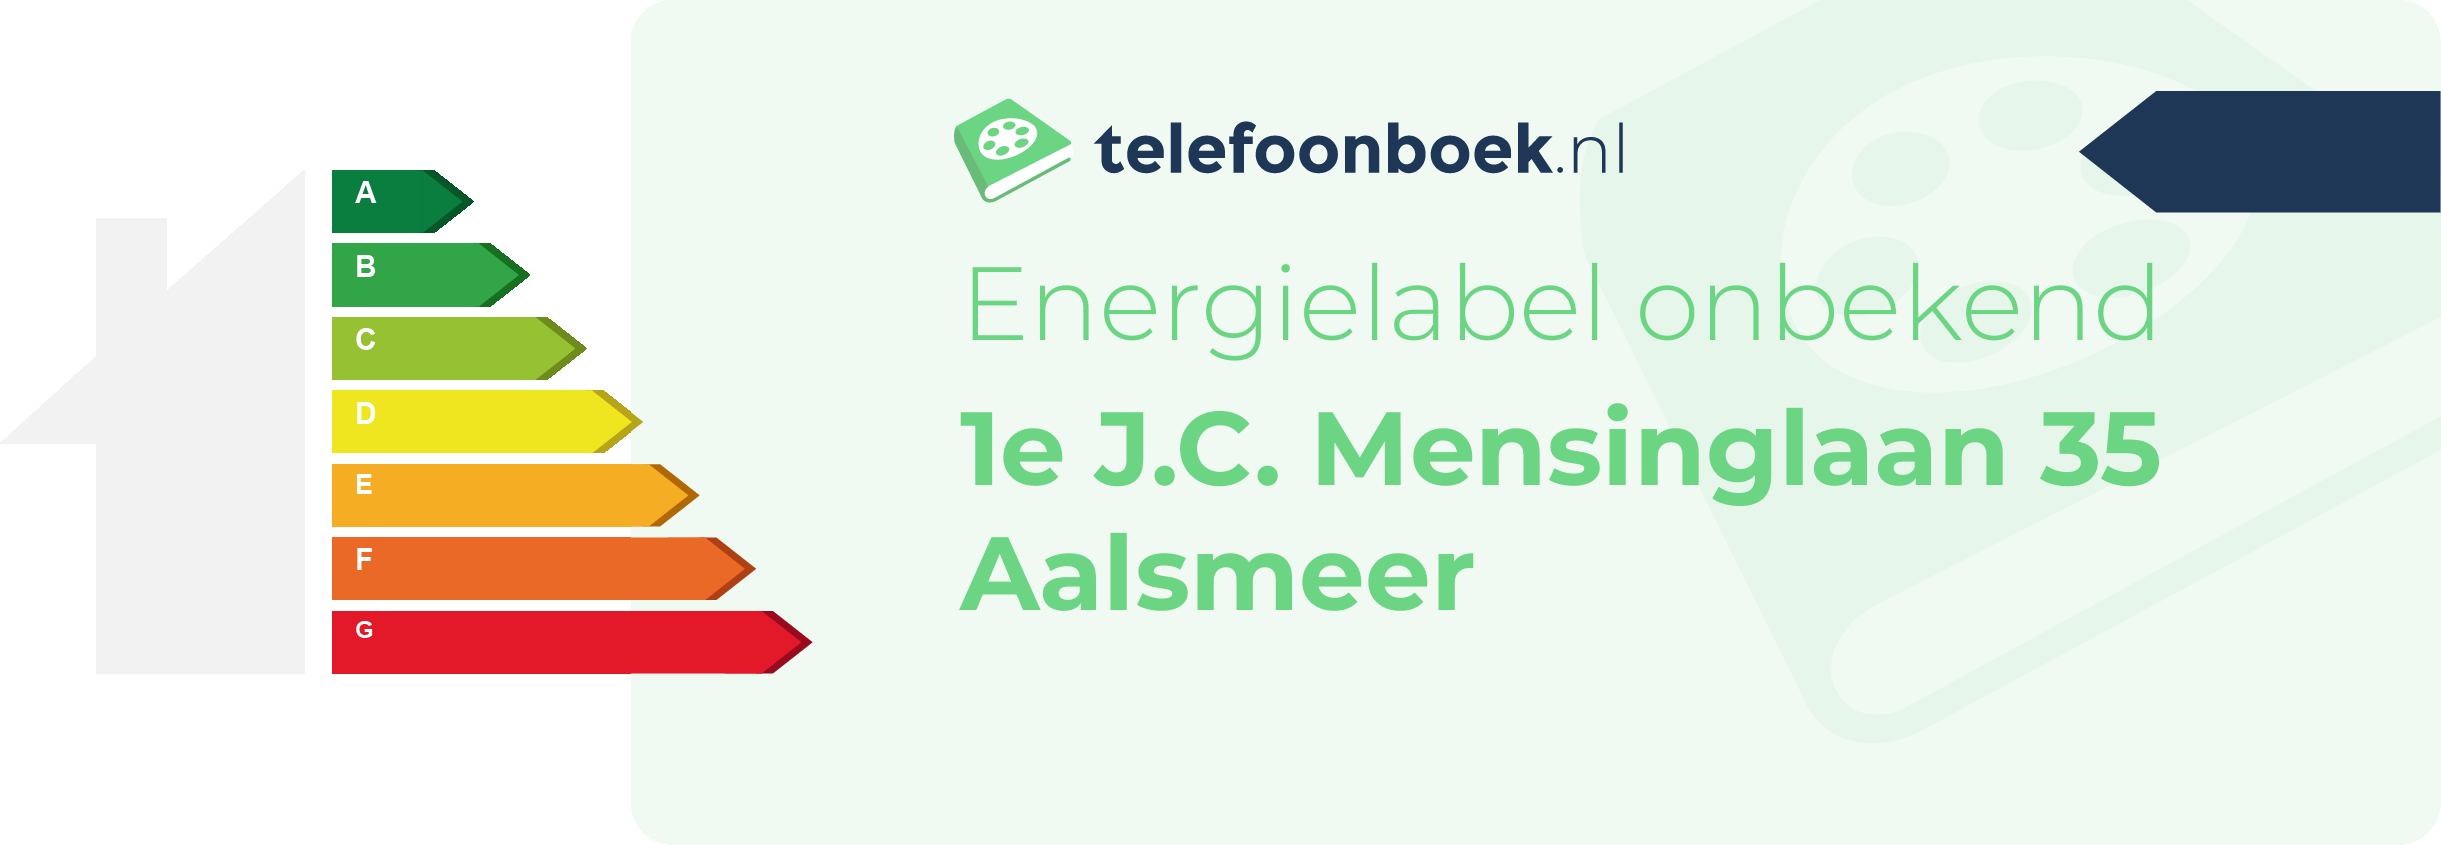 Energielabel 1e J.C. Mensinglaan 35 Aalsmeer